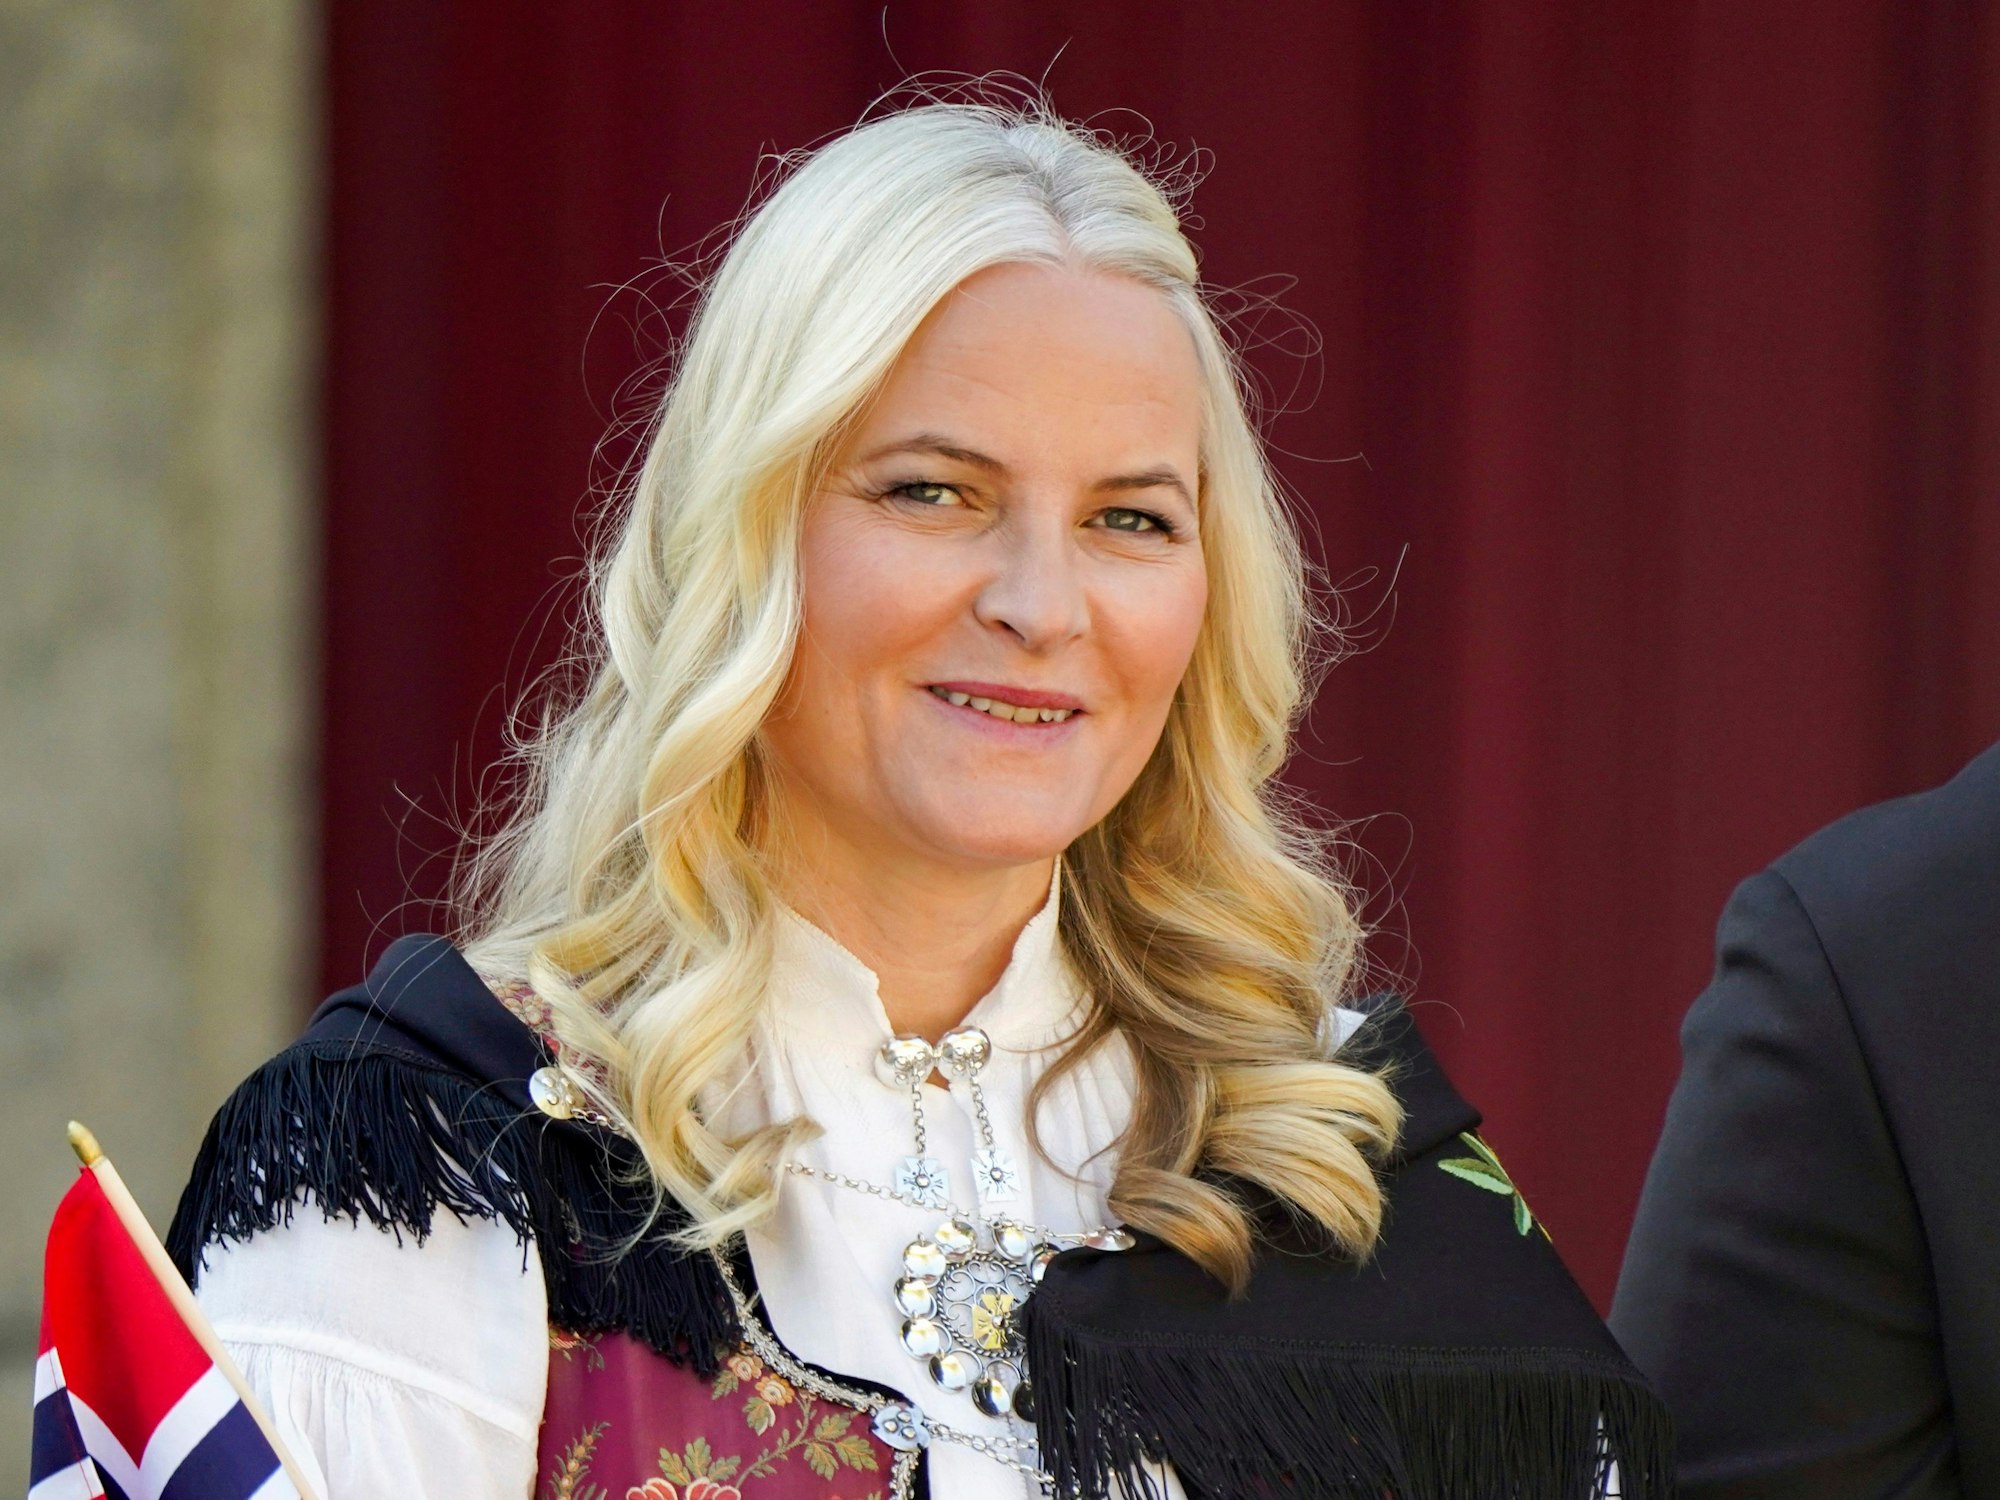 Kronprinzessin Mette-Marit von Norwegen beobachtet eine Parade anlässlich des norwegischen Verfassungstages in Skaugum, ihrer offiziellen Residenz, in der Nähe von Oslo.